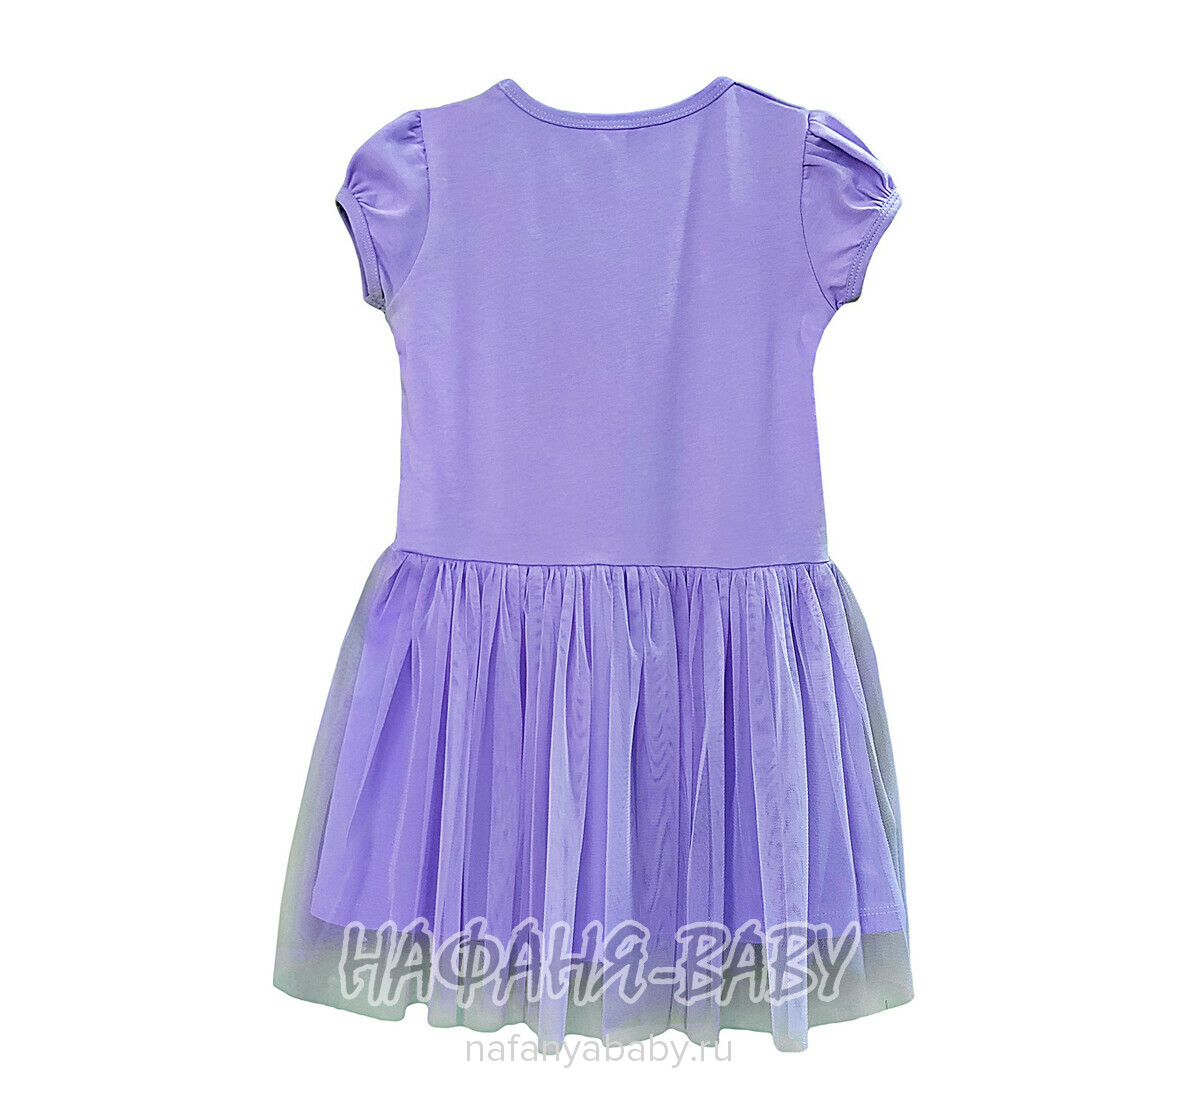 Платье трикотажное PF, купить в интернет магазине Нафаня. арт: 6827.